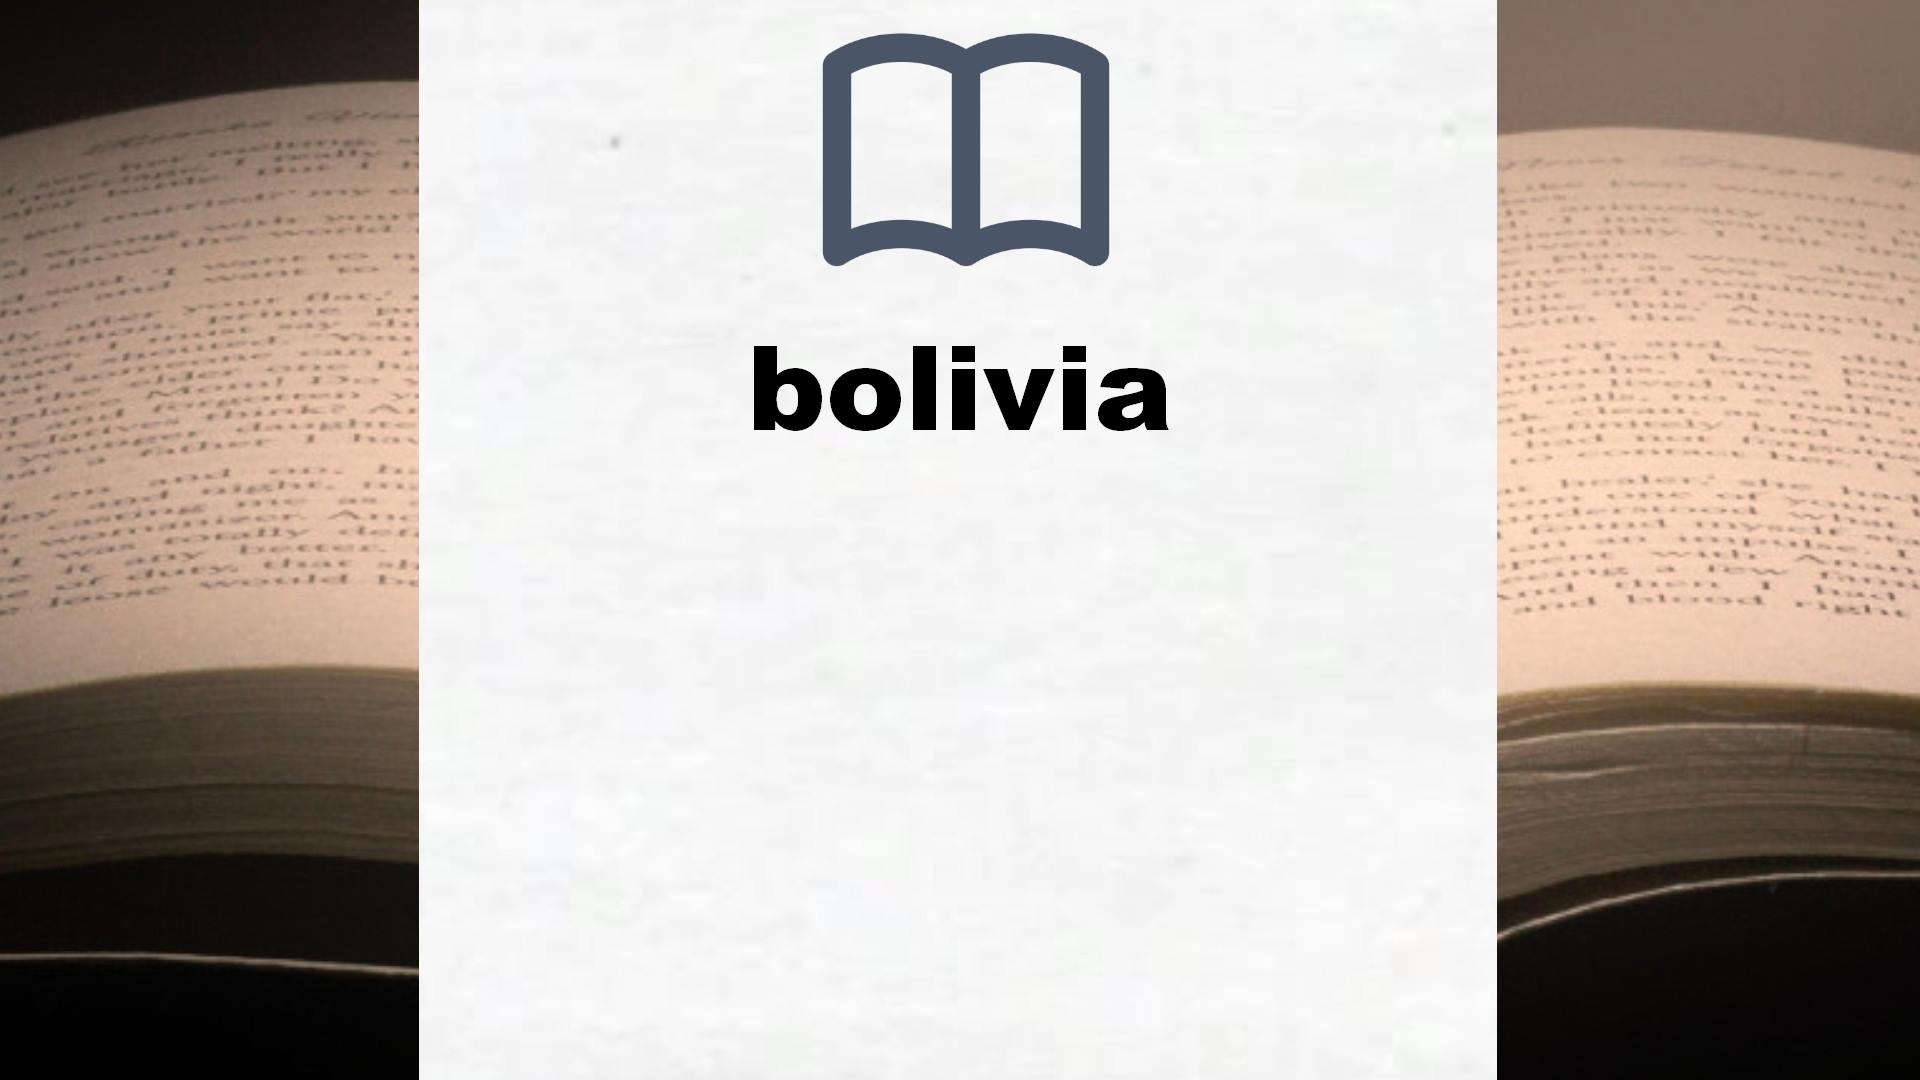 Libros sobre bolivia